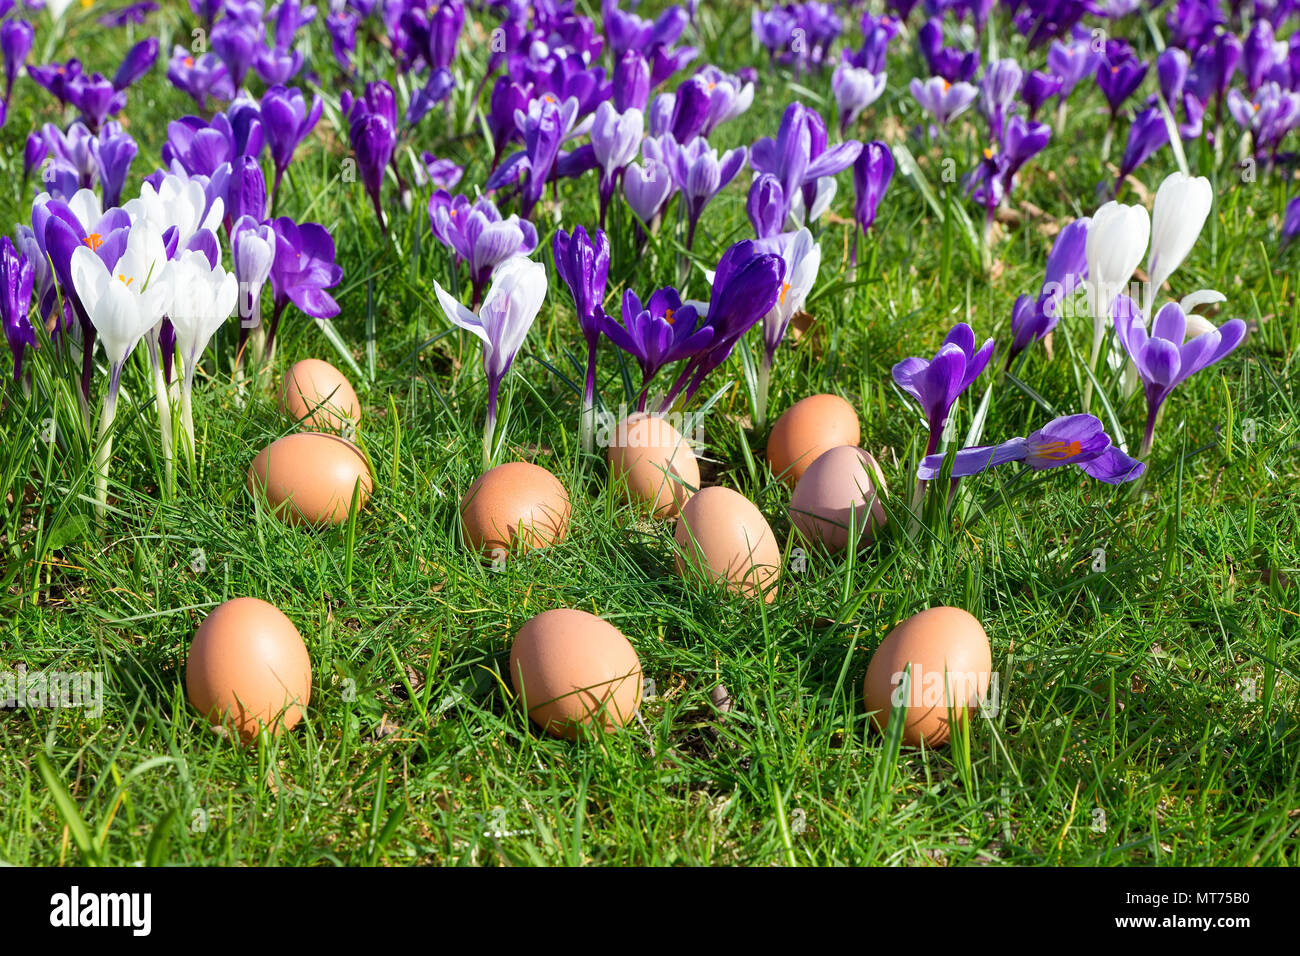 Allentate le uova di gallina sdraiati sull'erba nei pressi di fioriture di crochi Foto Stock